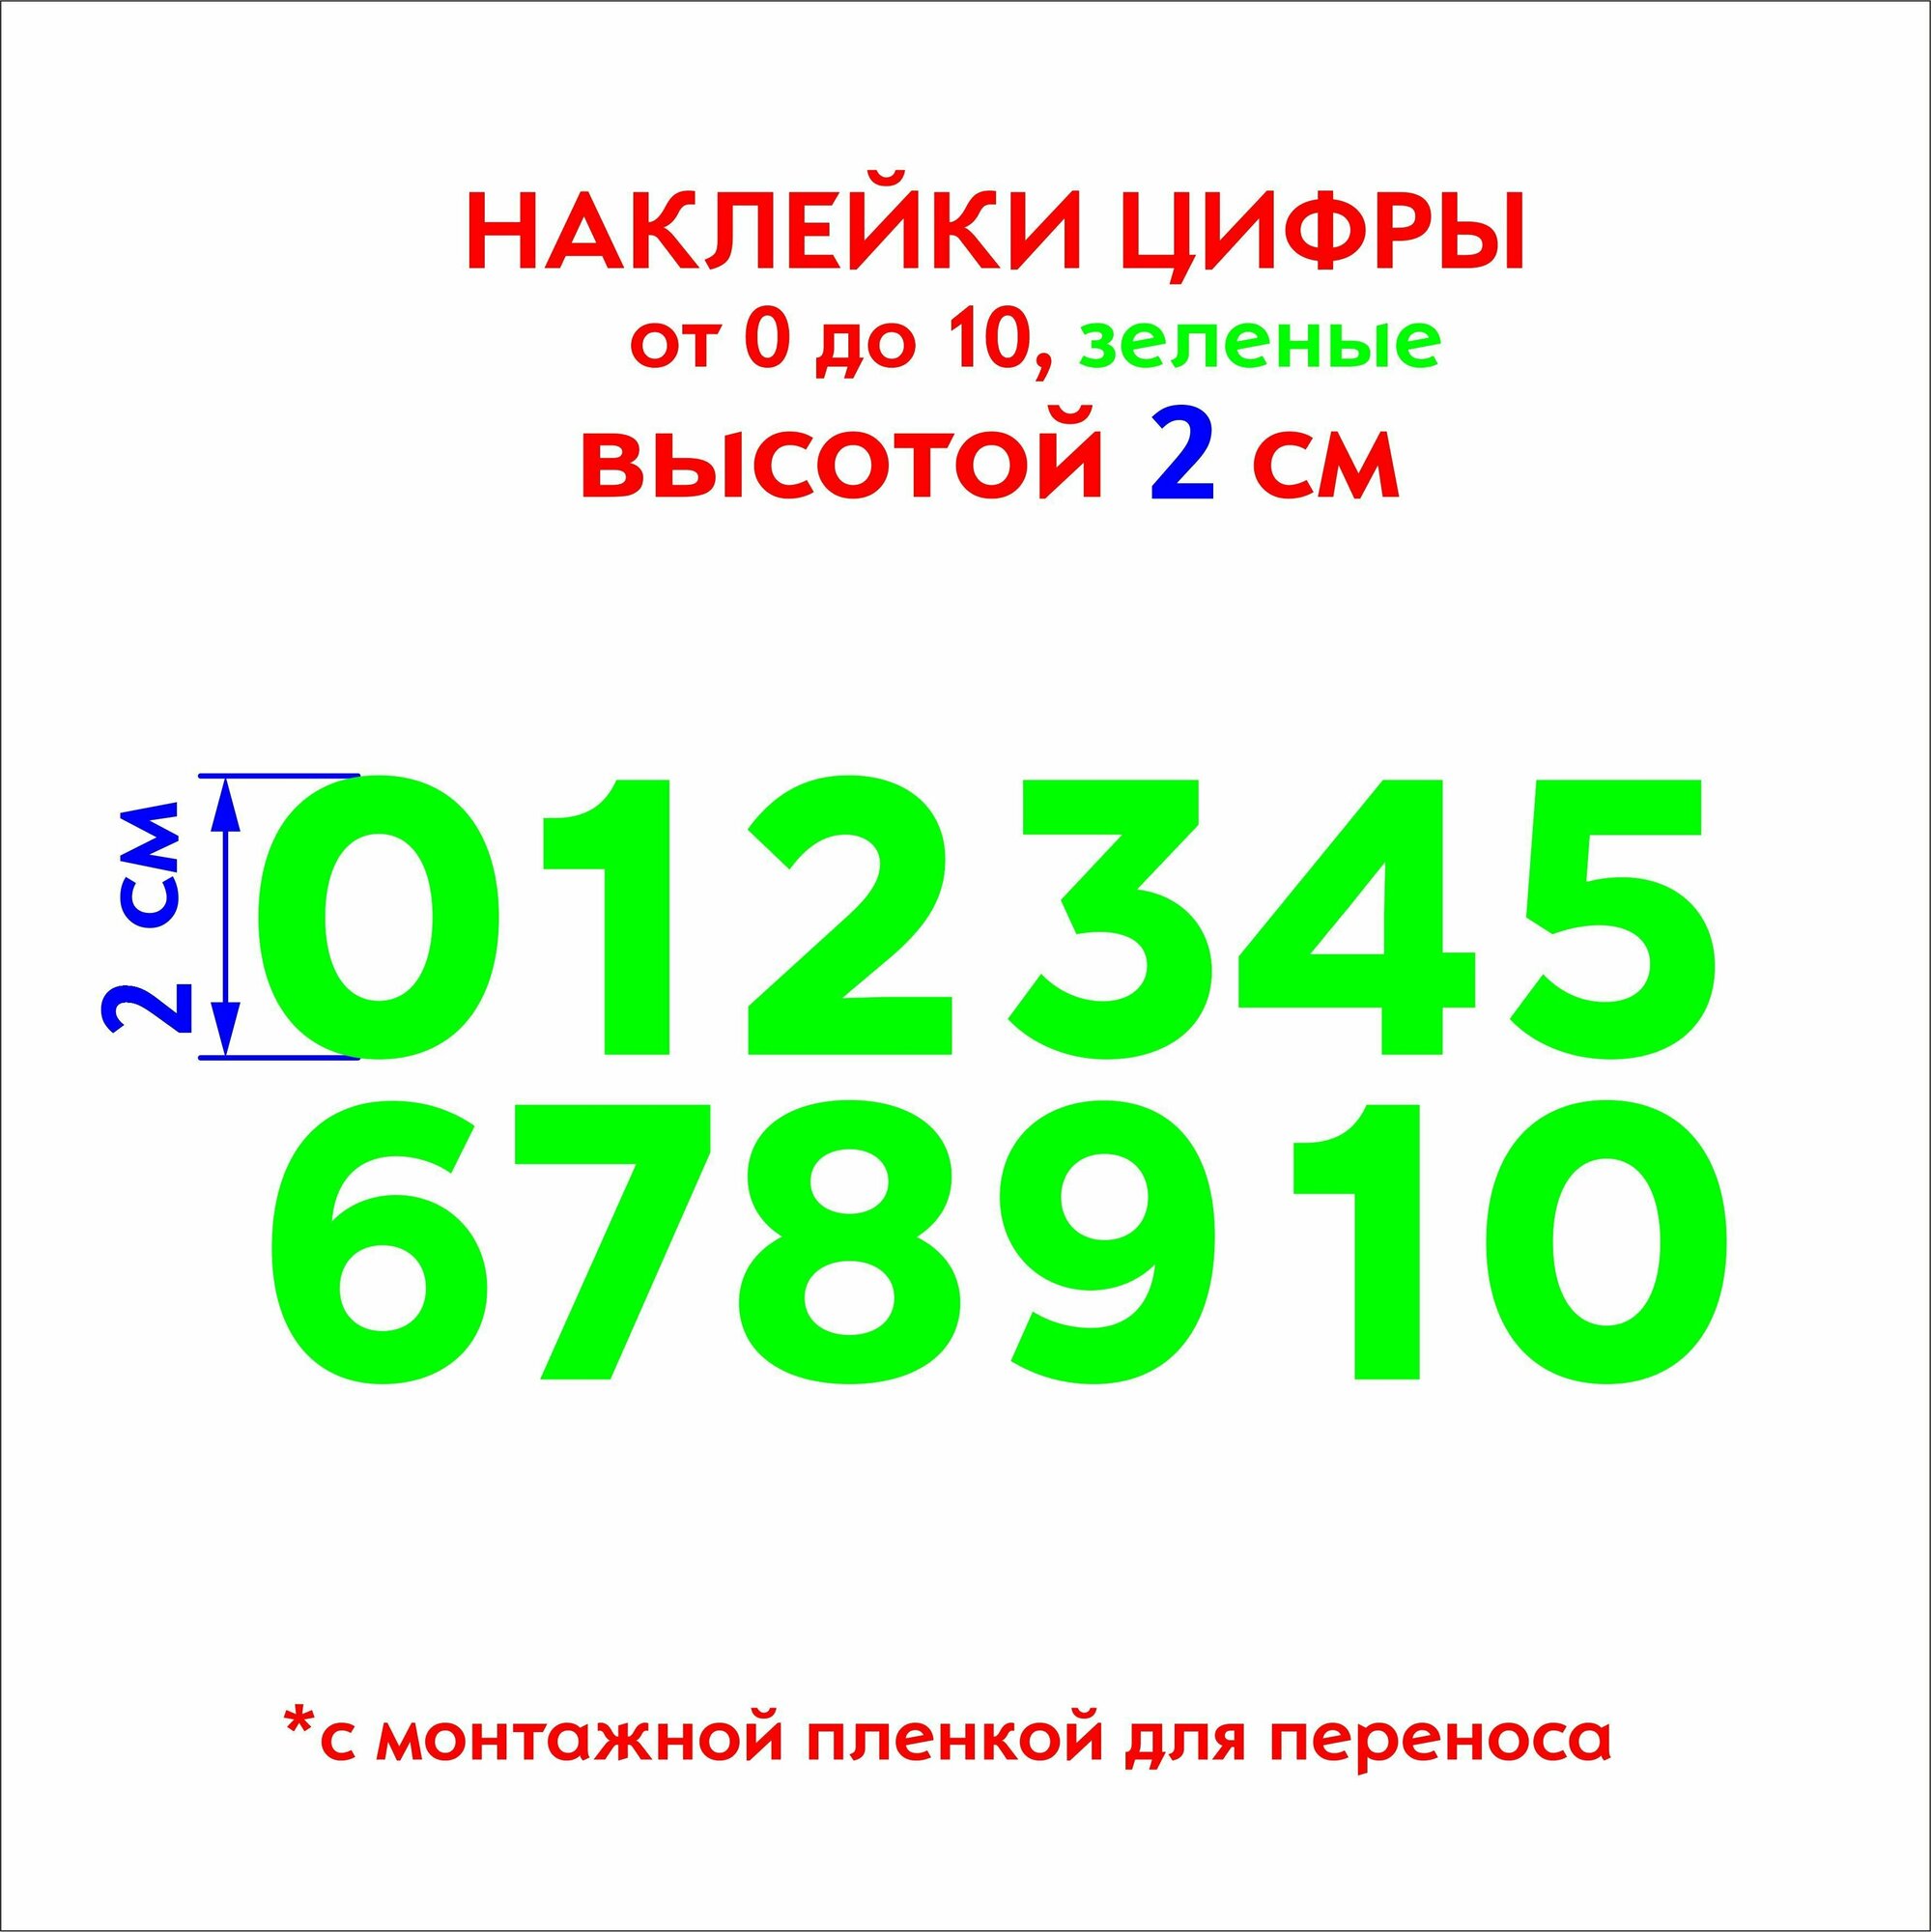 Наклейки цифры (стикеры), наклейка на авто набор цифр, зеленые, 2 см